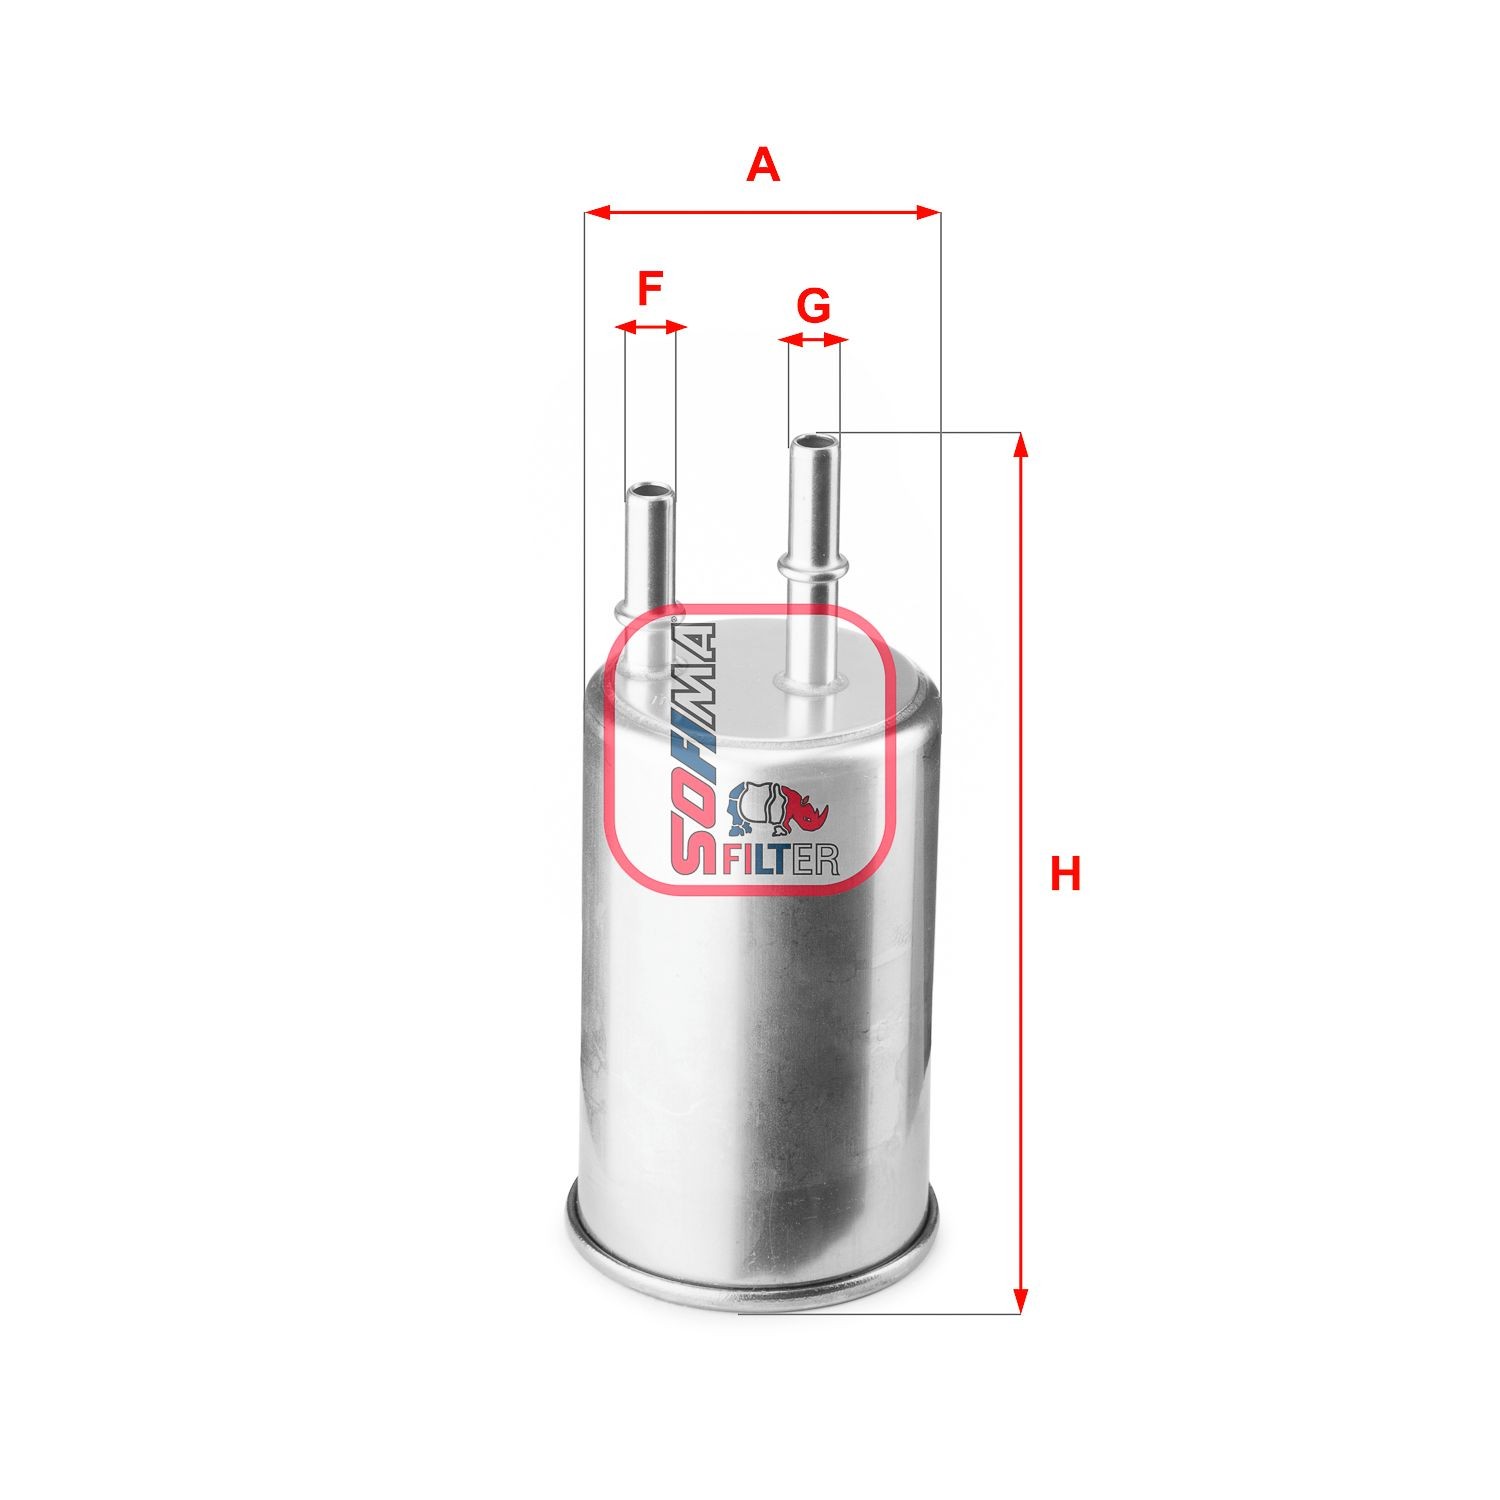 SOFIMA S 9183 B Fuel filter Filter Insert, 9,4mm, 7,8mm